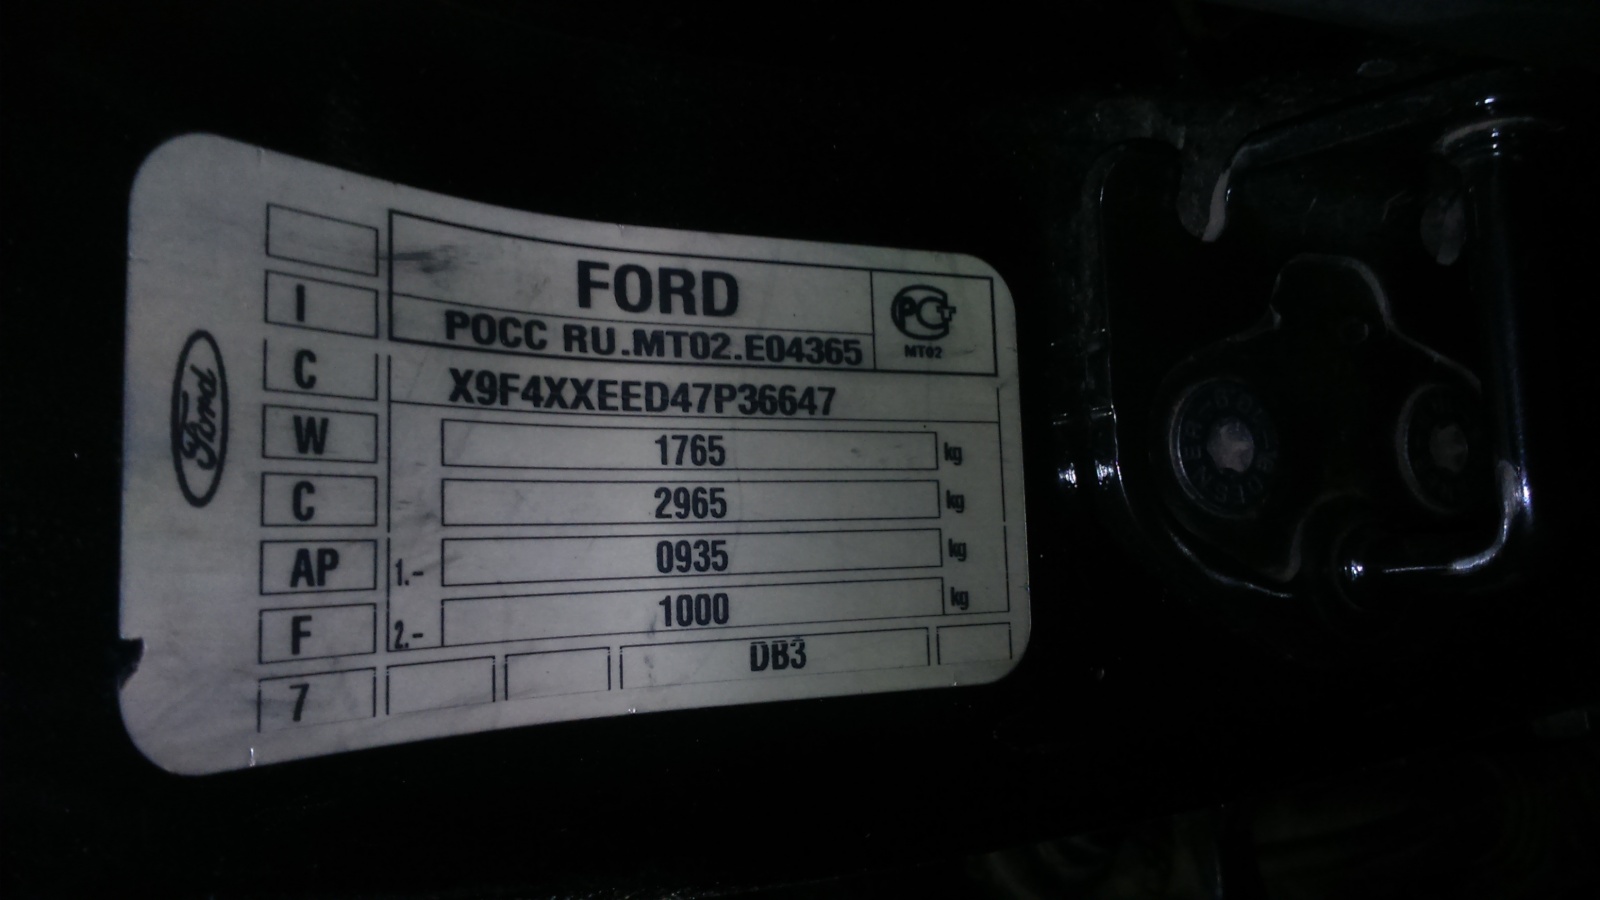 Форд фокус где код краски. Форд фокус 2 2006 года черный номер краски. Маркировочная табличка вин Форд фокус 2 Рестайлинг. Шильдик код краски Ford Focus 2. VIN code Форд фокус 2.